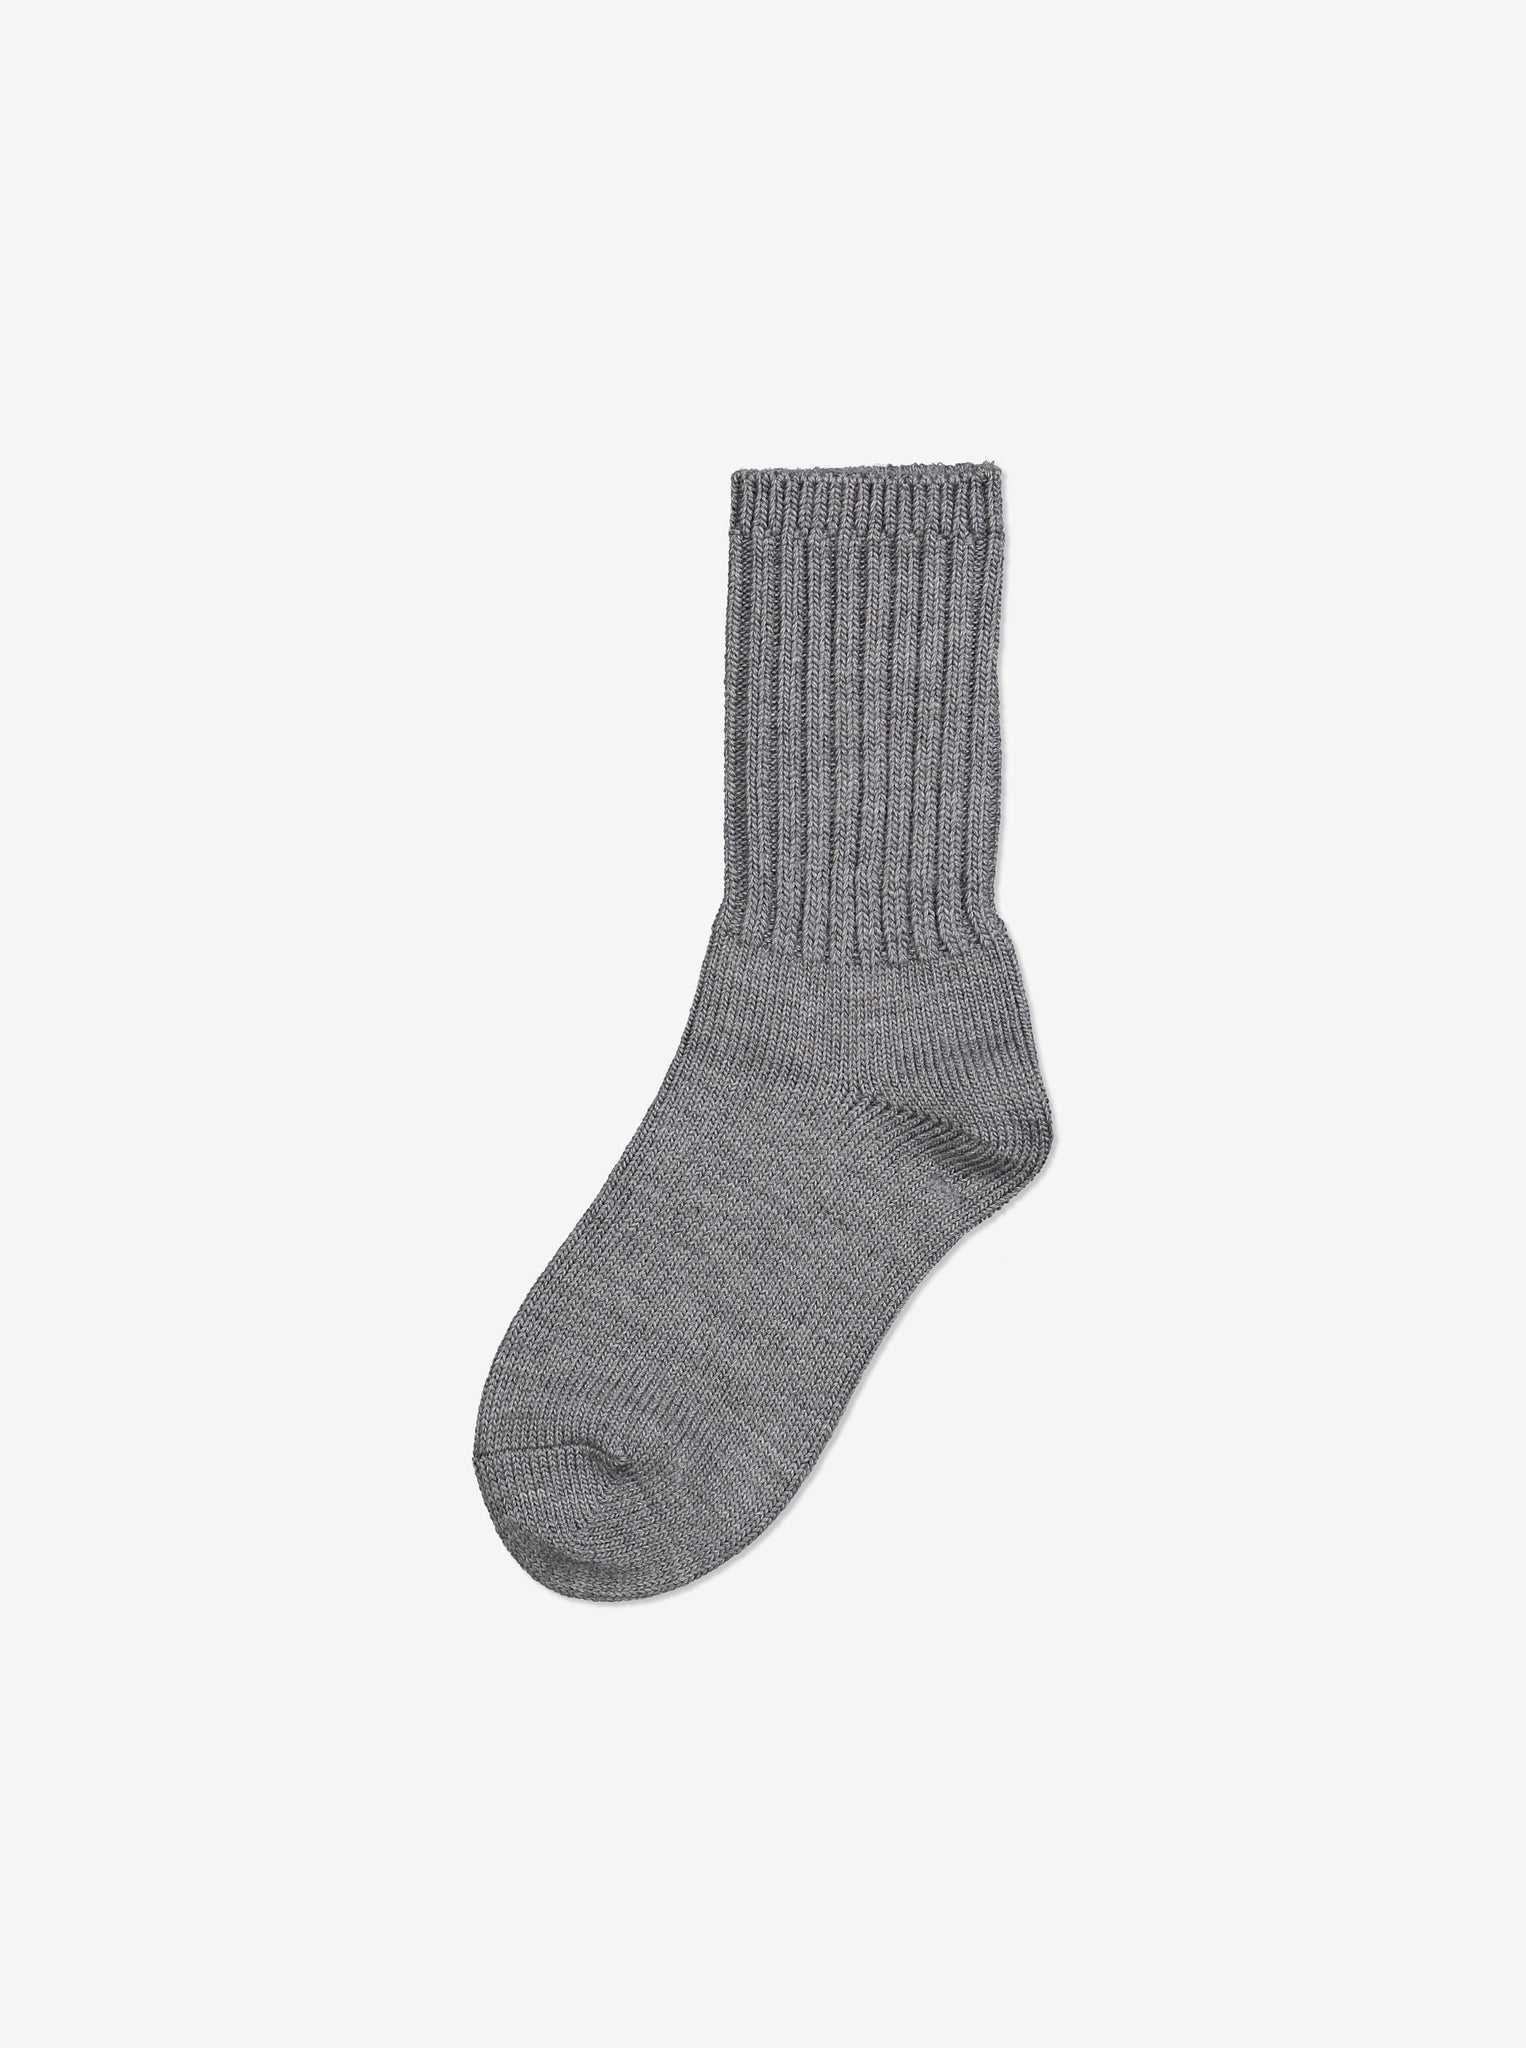 Thermal Merino Kids Wool Socks